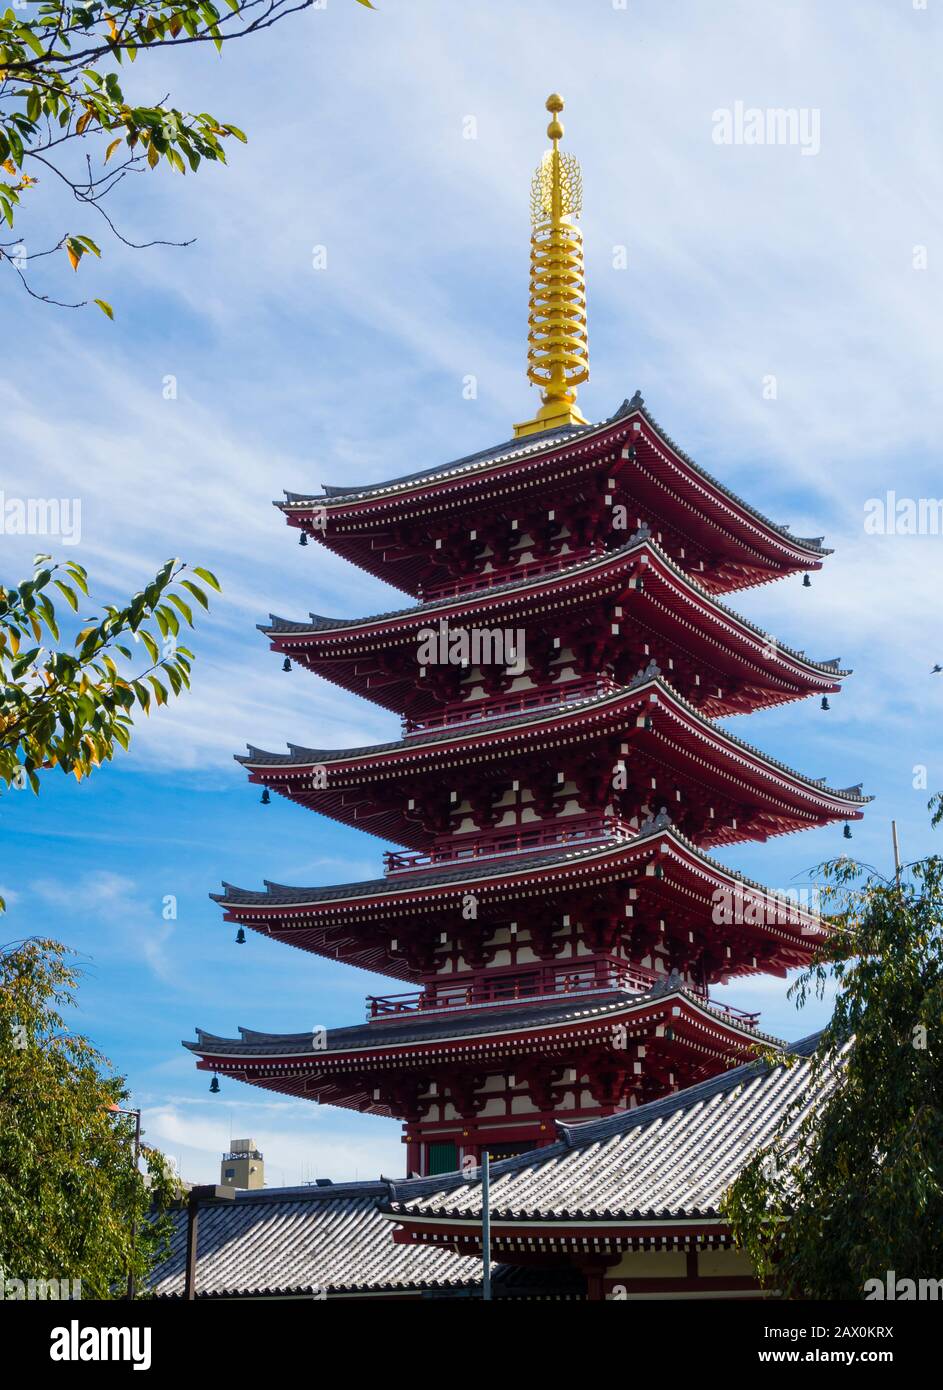 Tokyo, Giappone - 10 ottobre 2018: Pagoda a cinque piani al Tempio Sensoji (anche: Tempio Asakusa Kannon) nel quartiere dei templi di Asakusa Shinto di Tokyo. Foto Stock